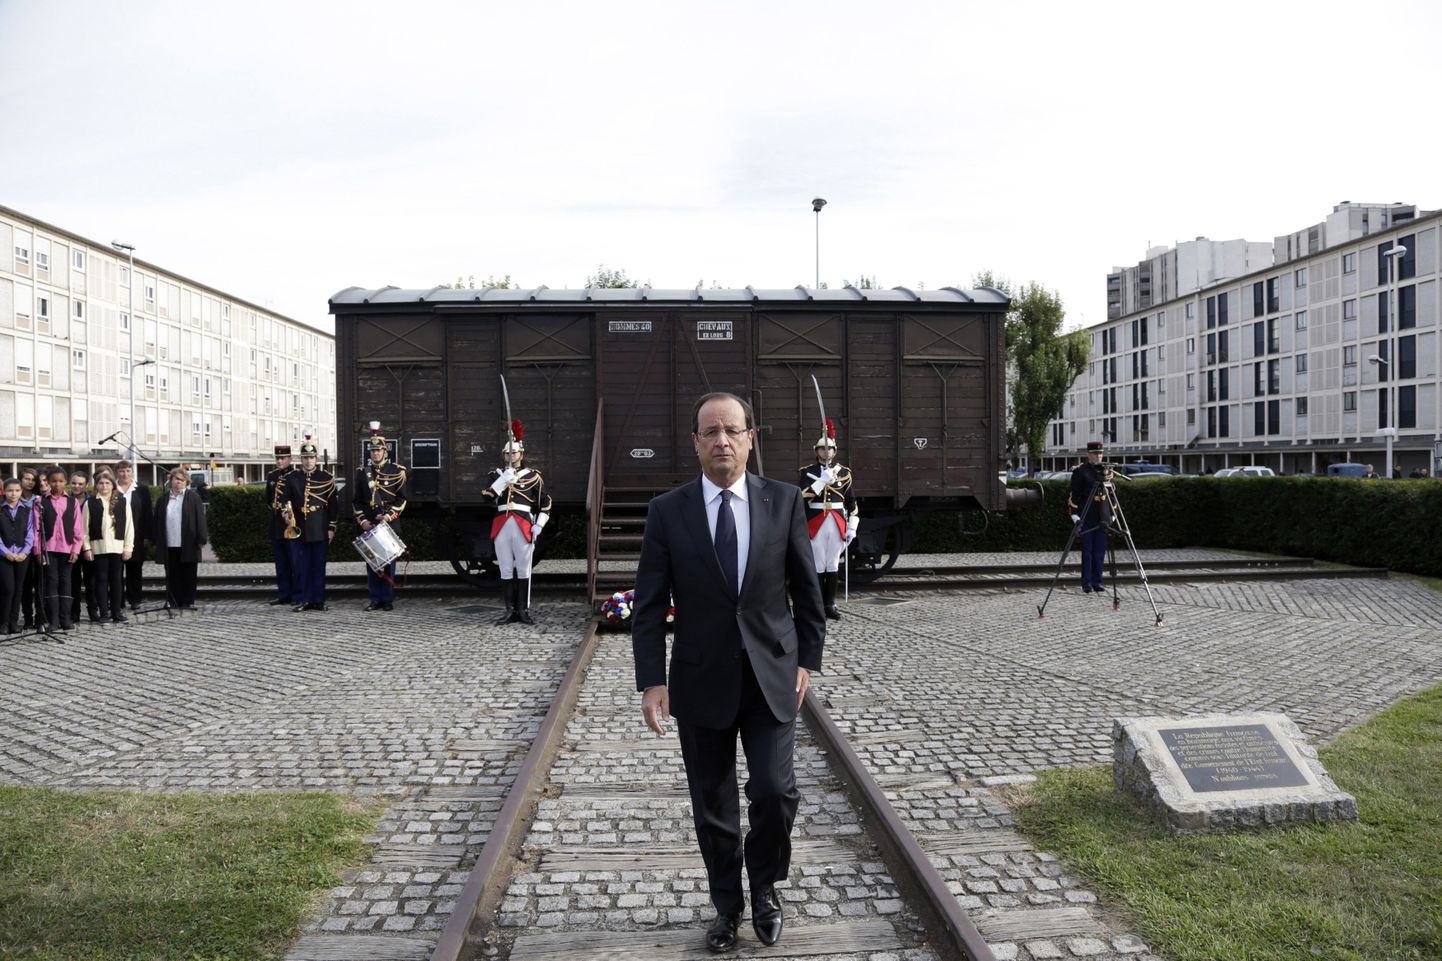 Prantsuse president Francois Hollande Drancy laagrit sümboliseeriva SNCFi vaguni juures.